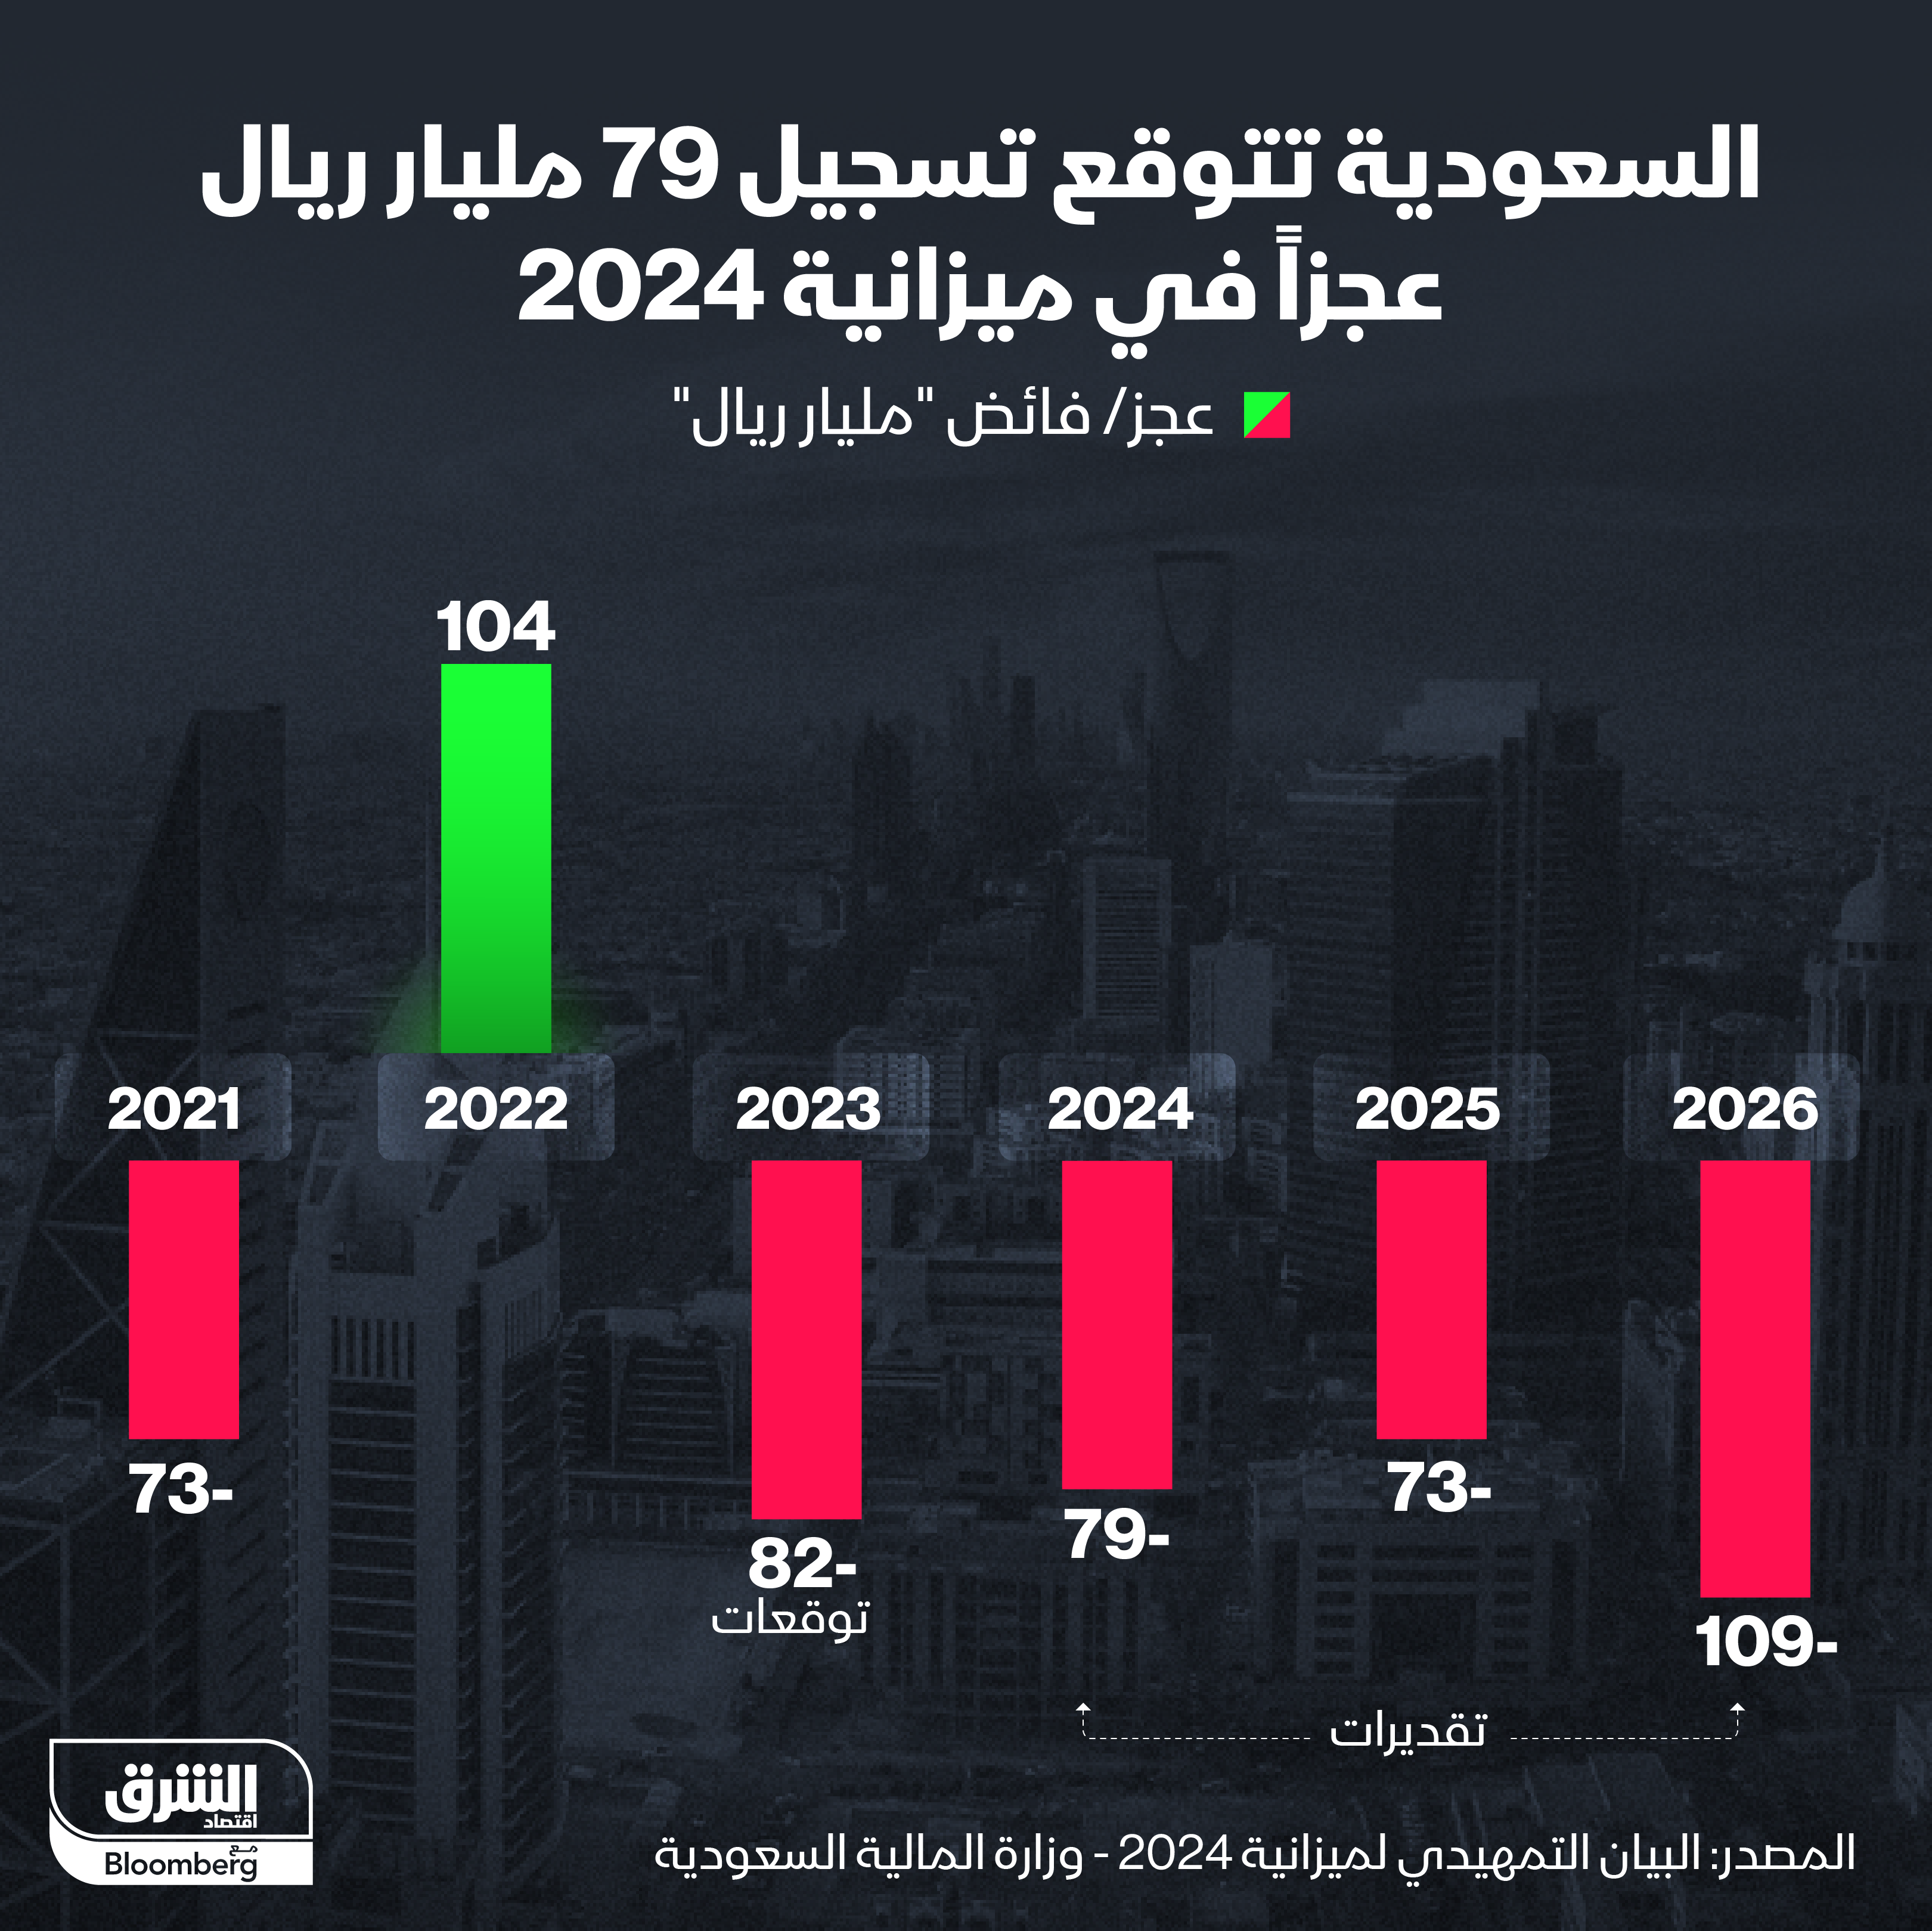 السعودية تتوقع تحقيق عجز 79 مليار ريال في ميزانية 2024